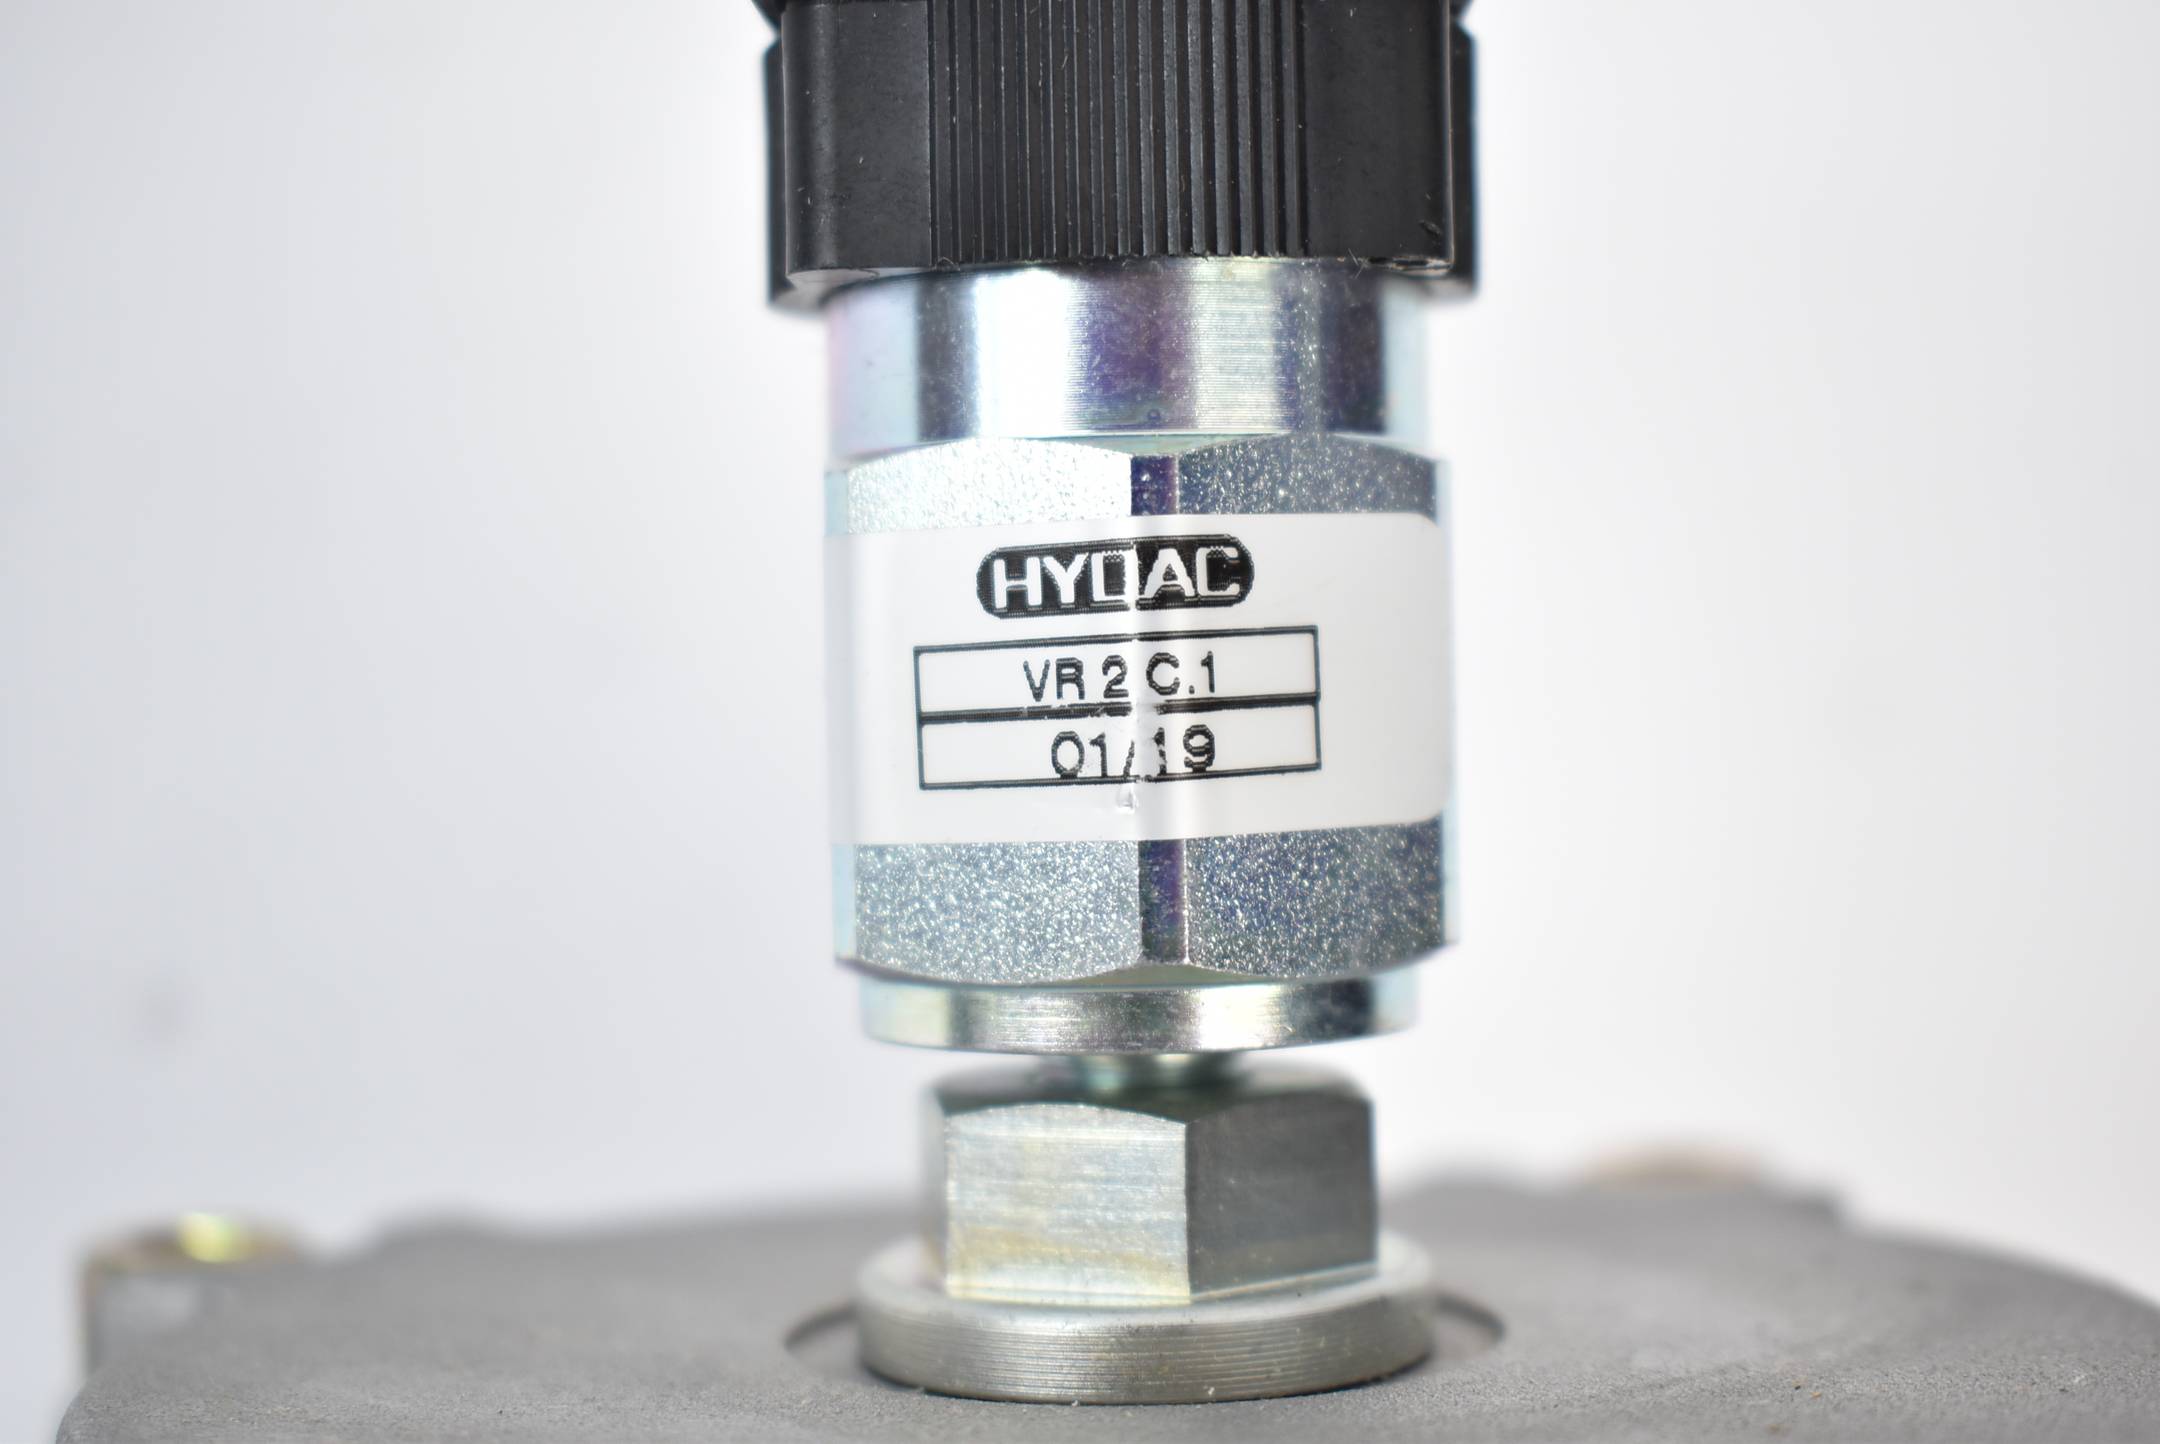 Hydac Rücklauffilter RF BNK 240 D E 10 C1.0 + Filterverschmutzungsanzeige VR2C.1